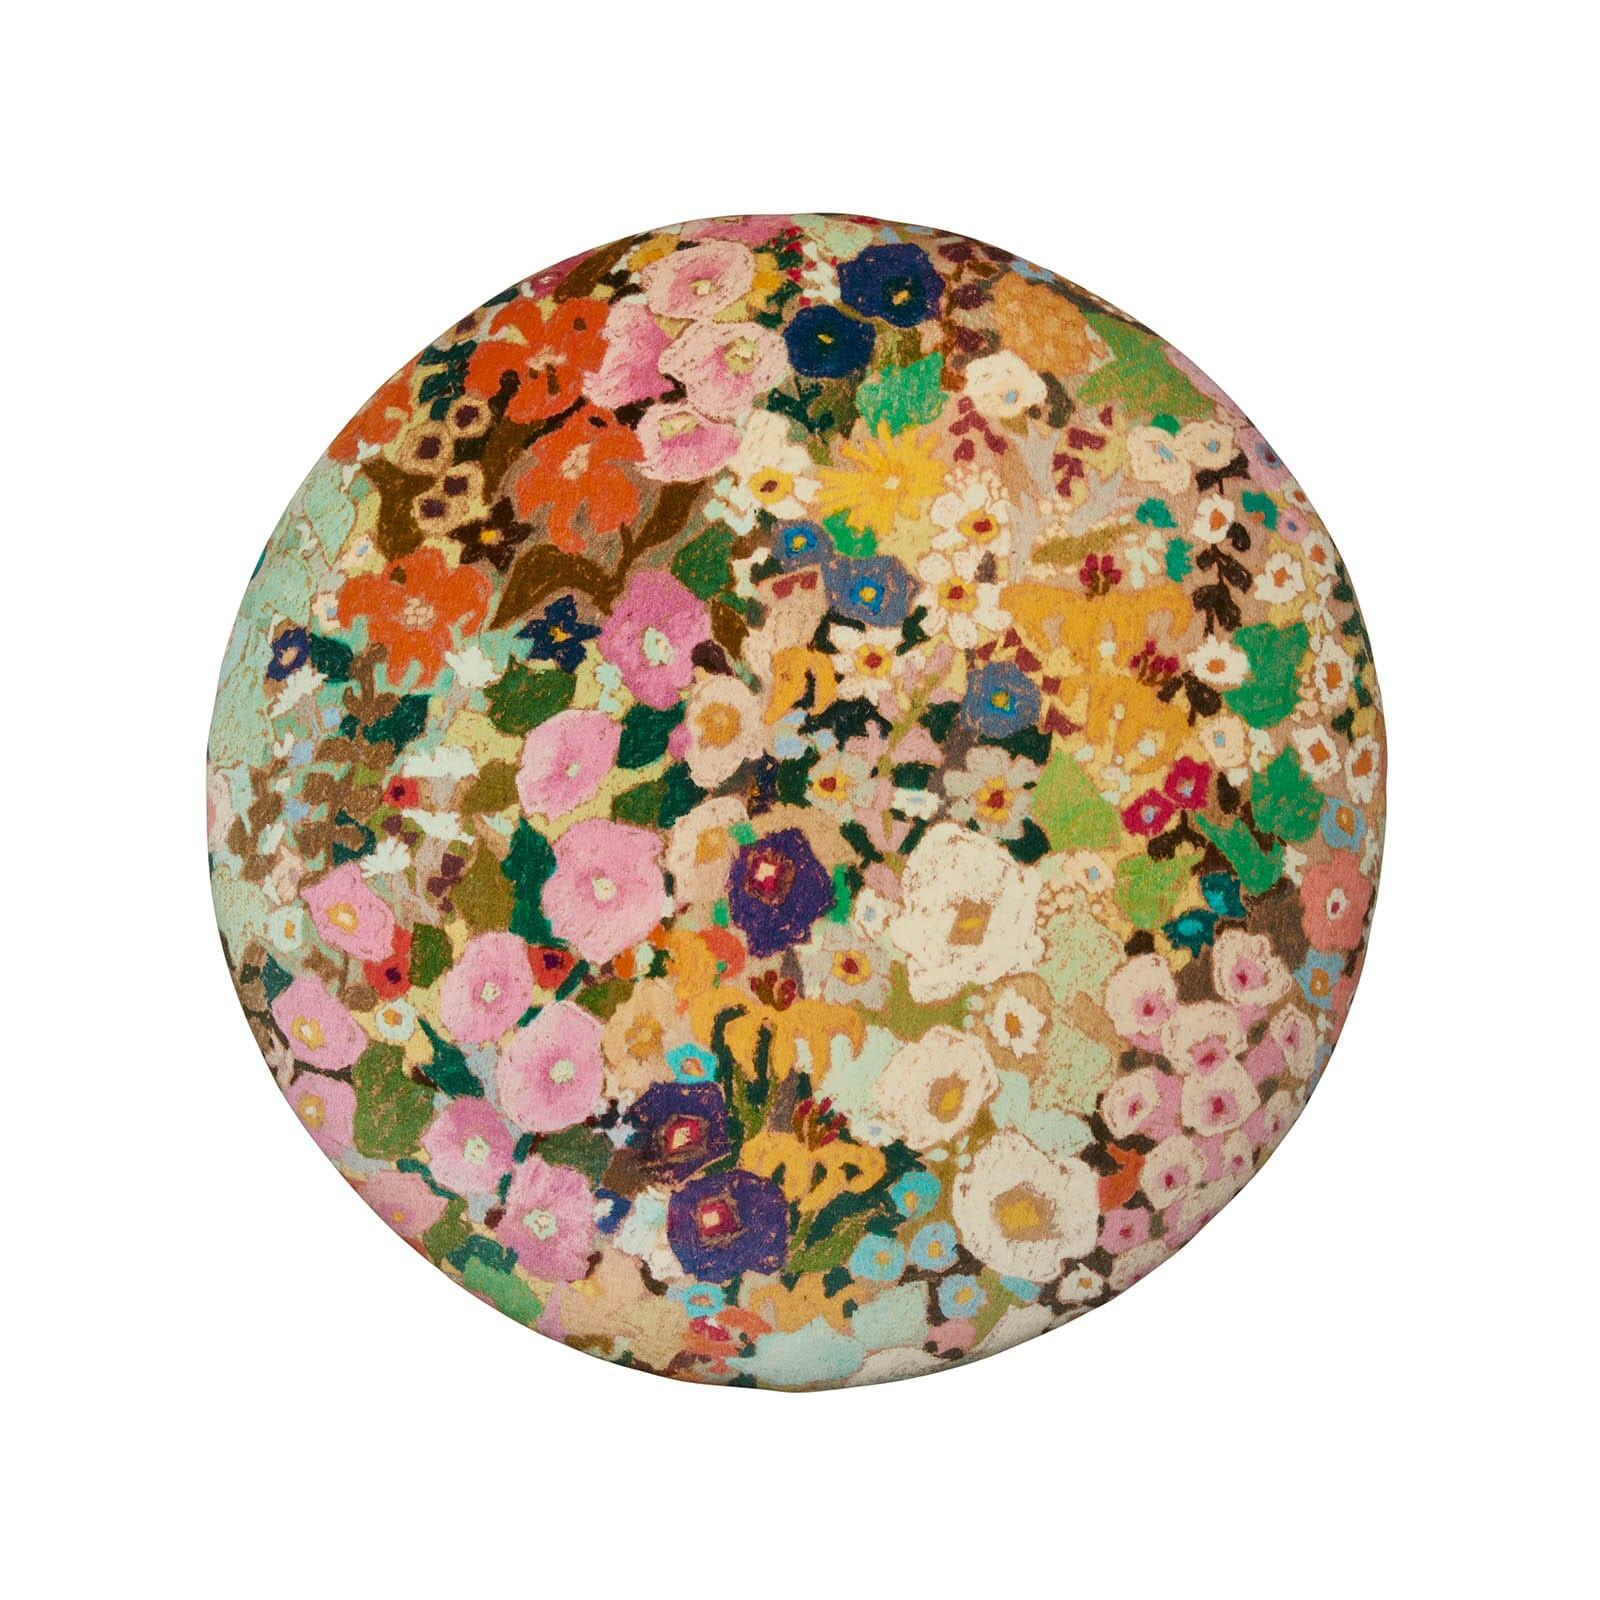 Rappelant les couleurs luxuriantes et la gaieté lumineuse des jardins fleuris peints par Gustav Klimt, HOLLYHOCKS a été créé spécialement pour House of Hackney par l'artiste américaine Kerry Simmons, d'après sa propre œuvre du même nom. Le somptueux